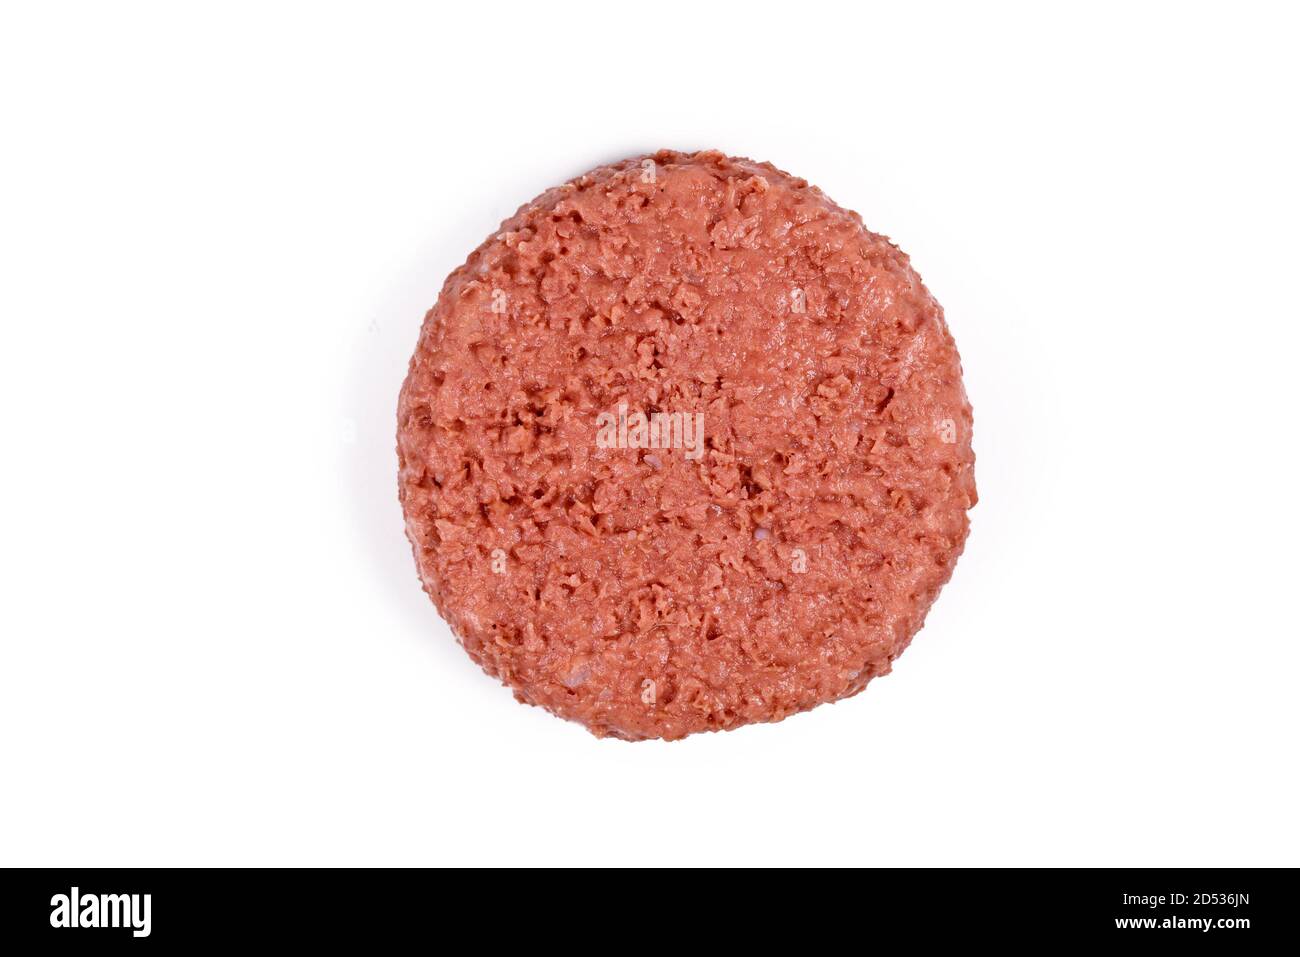 Rohes rundes veganes Burger-Patty auf Sojabasis, isoliert auf Weiß Hintergrund Stockfoto